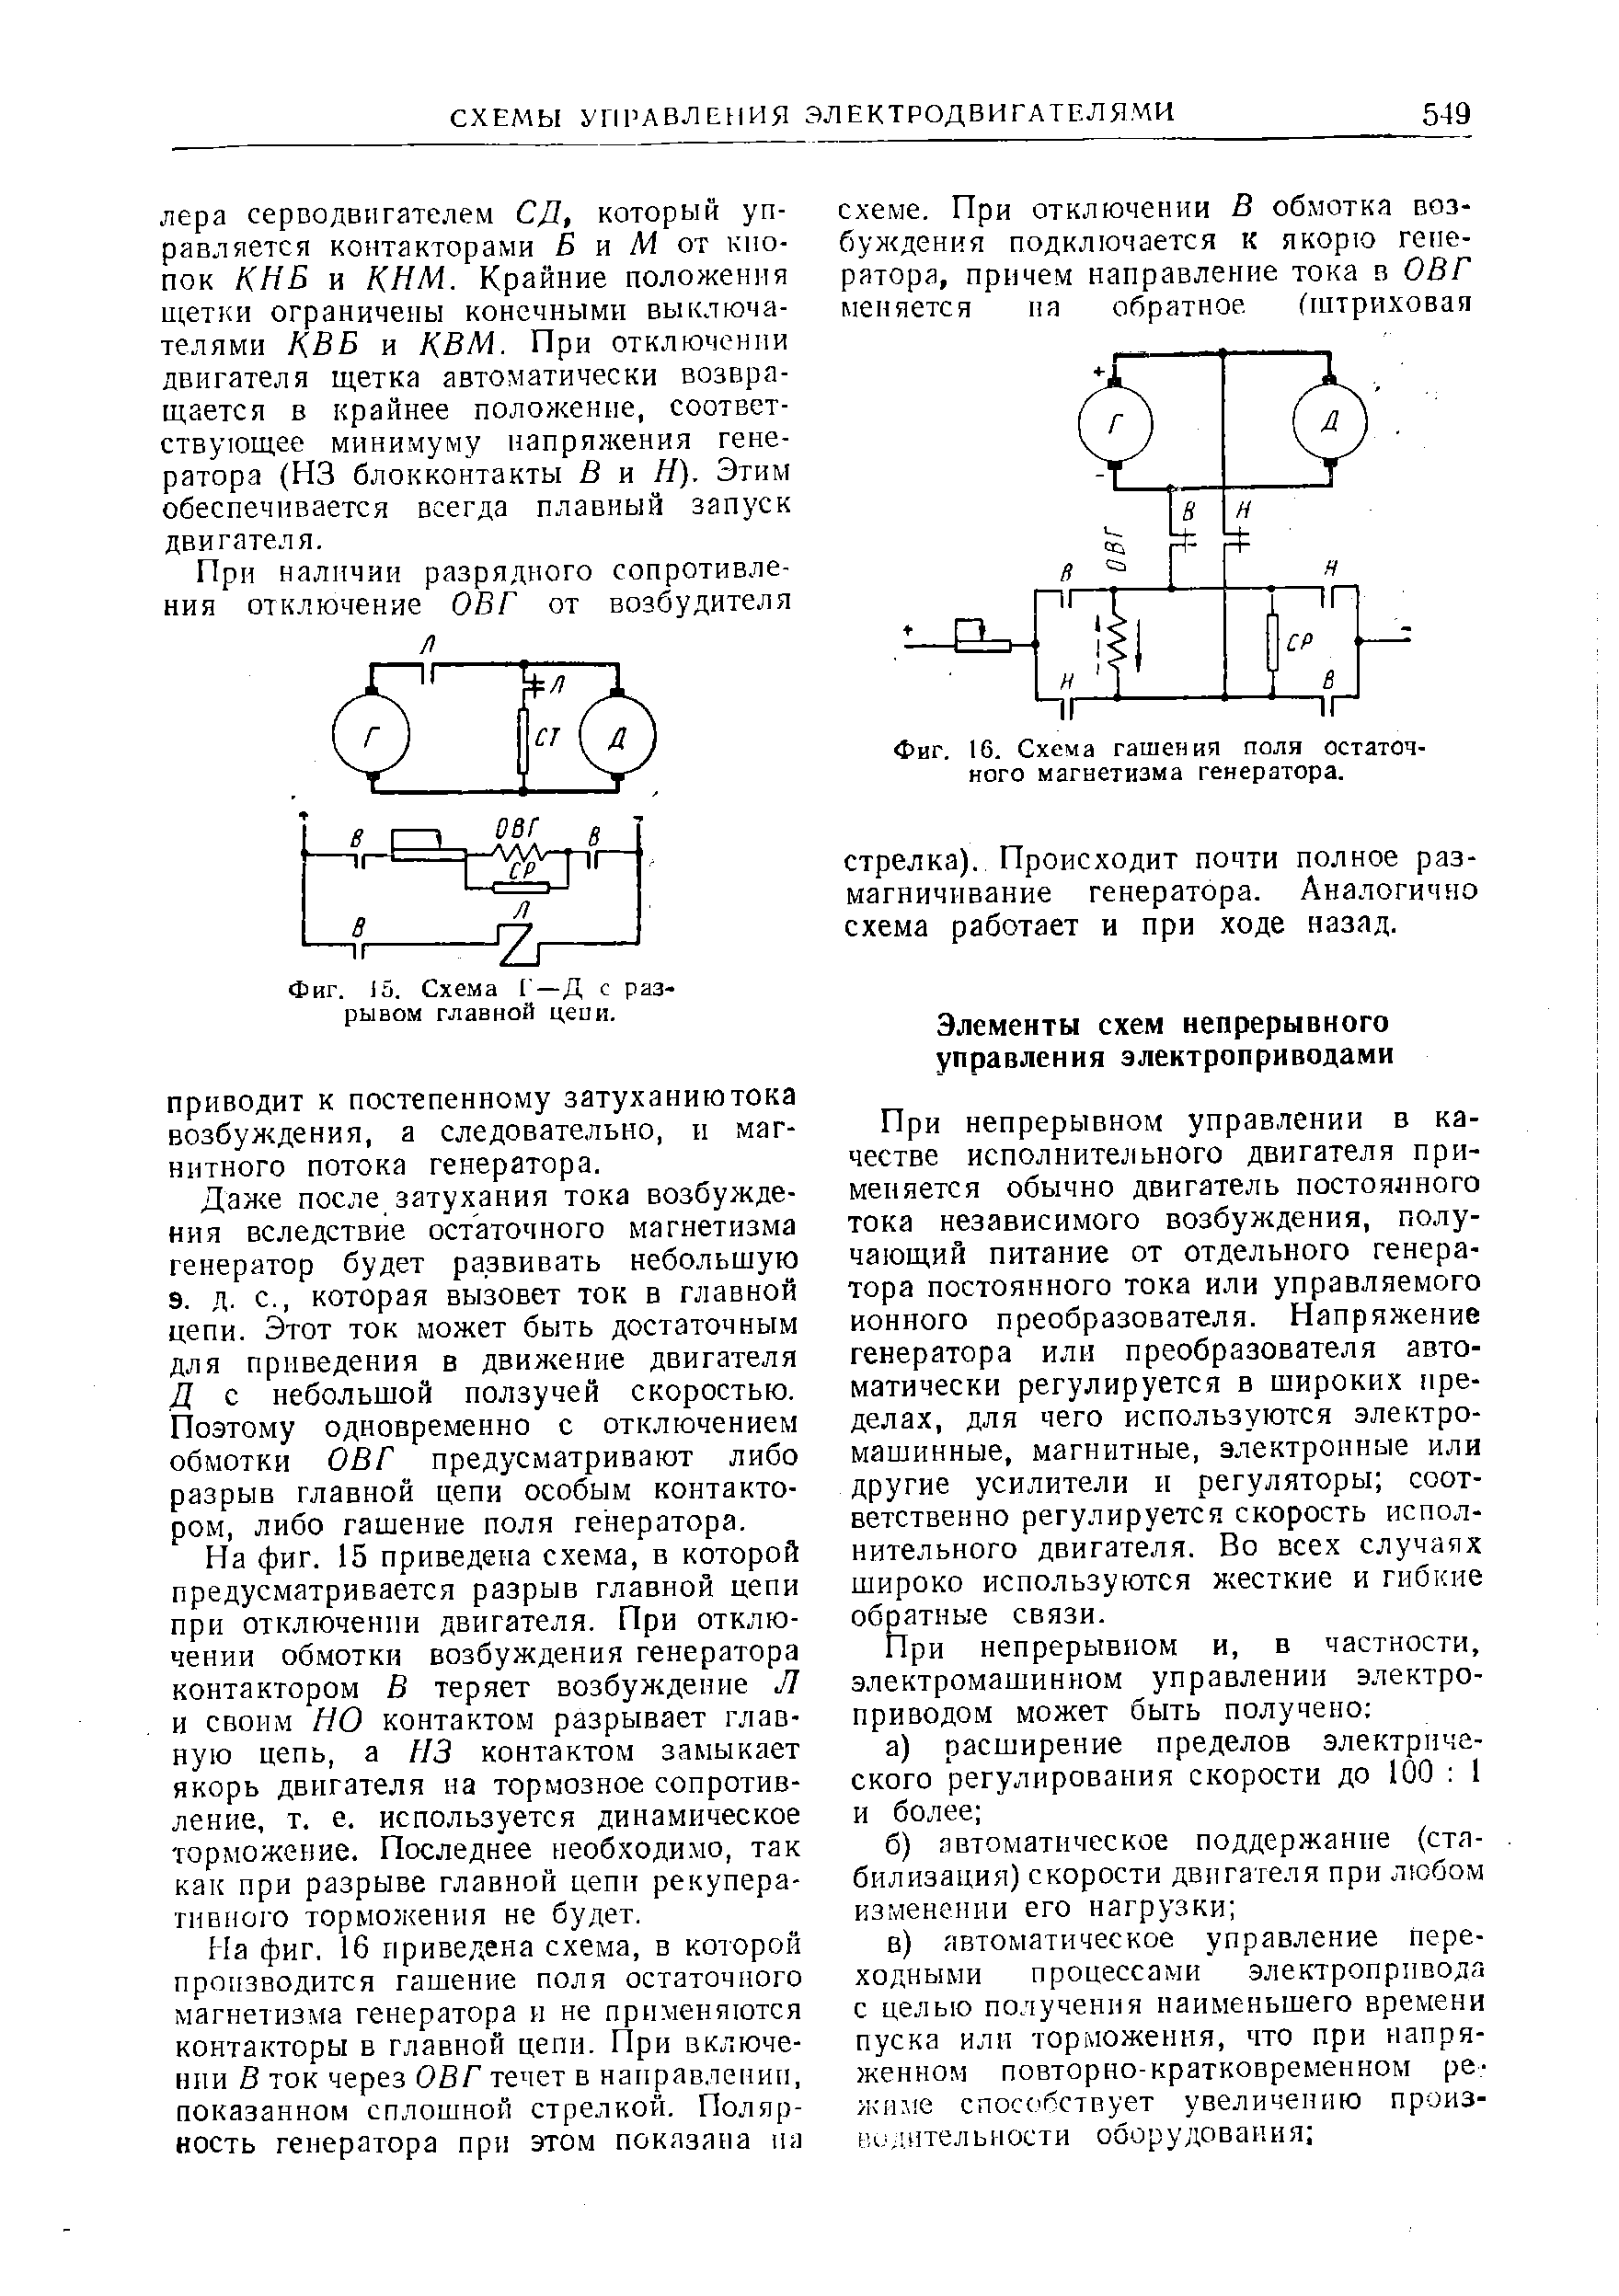 Фиг. 16, Схема гашения поля <a href="/info/205337">остаточного магнетизма</a> генератора.
